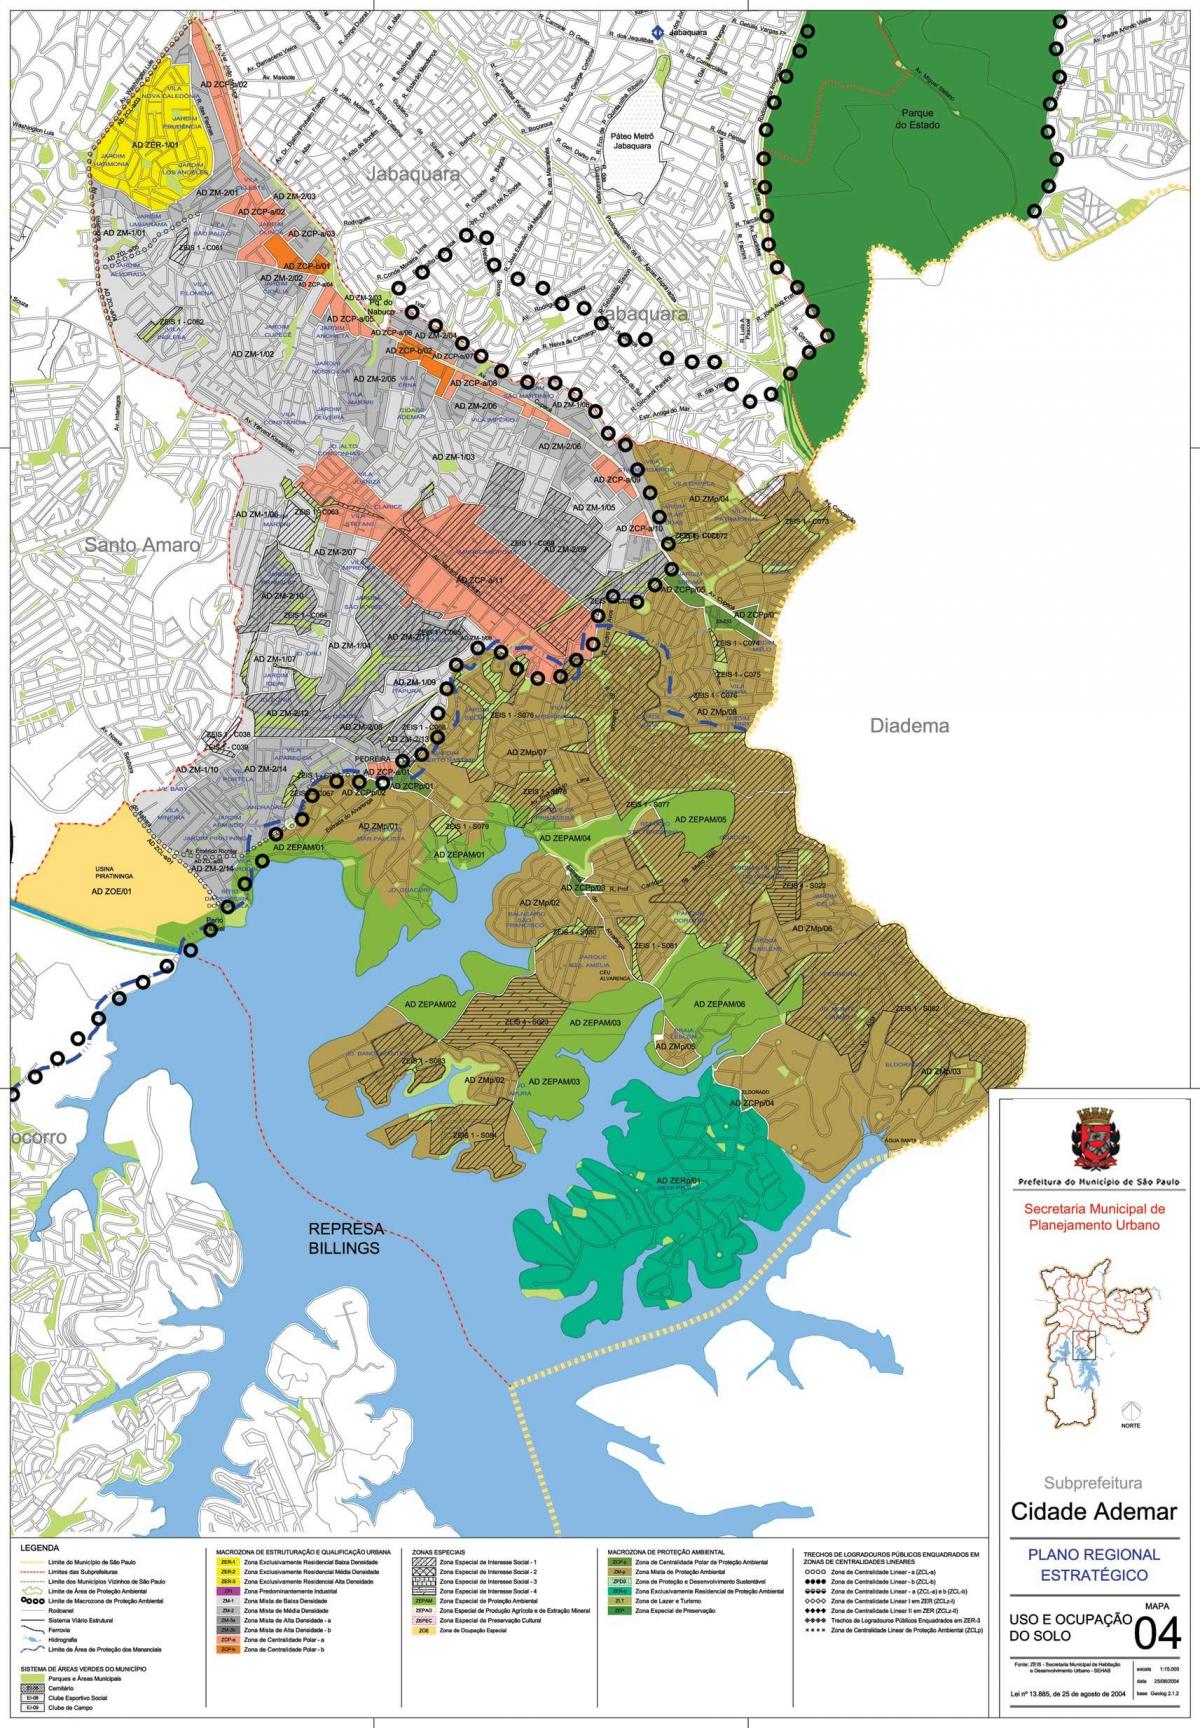 Mapa de Ciutat Ademar de São Paulo - Ocupació del sòl